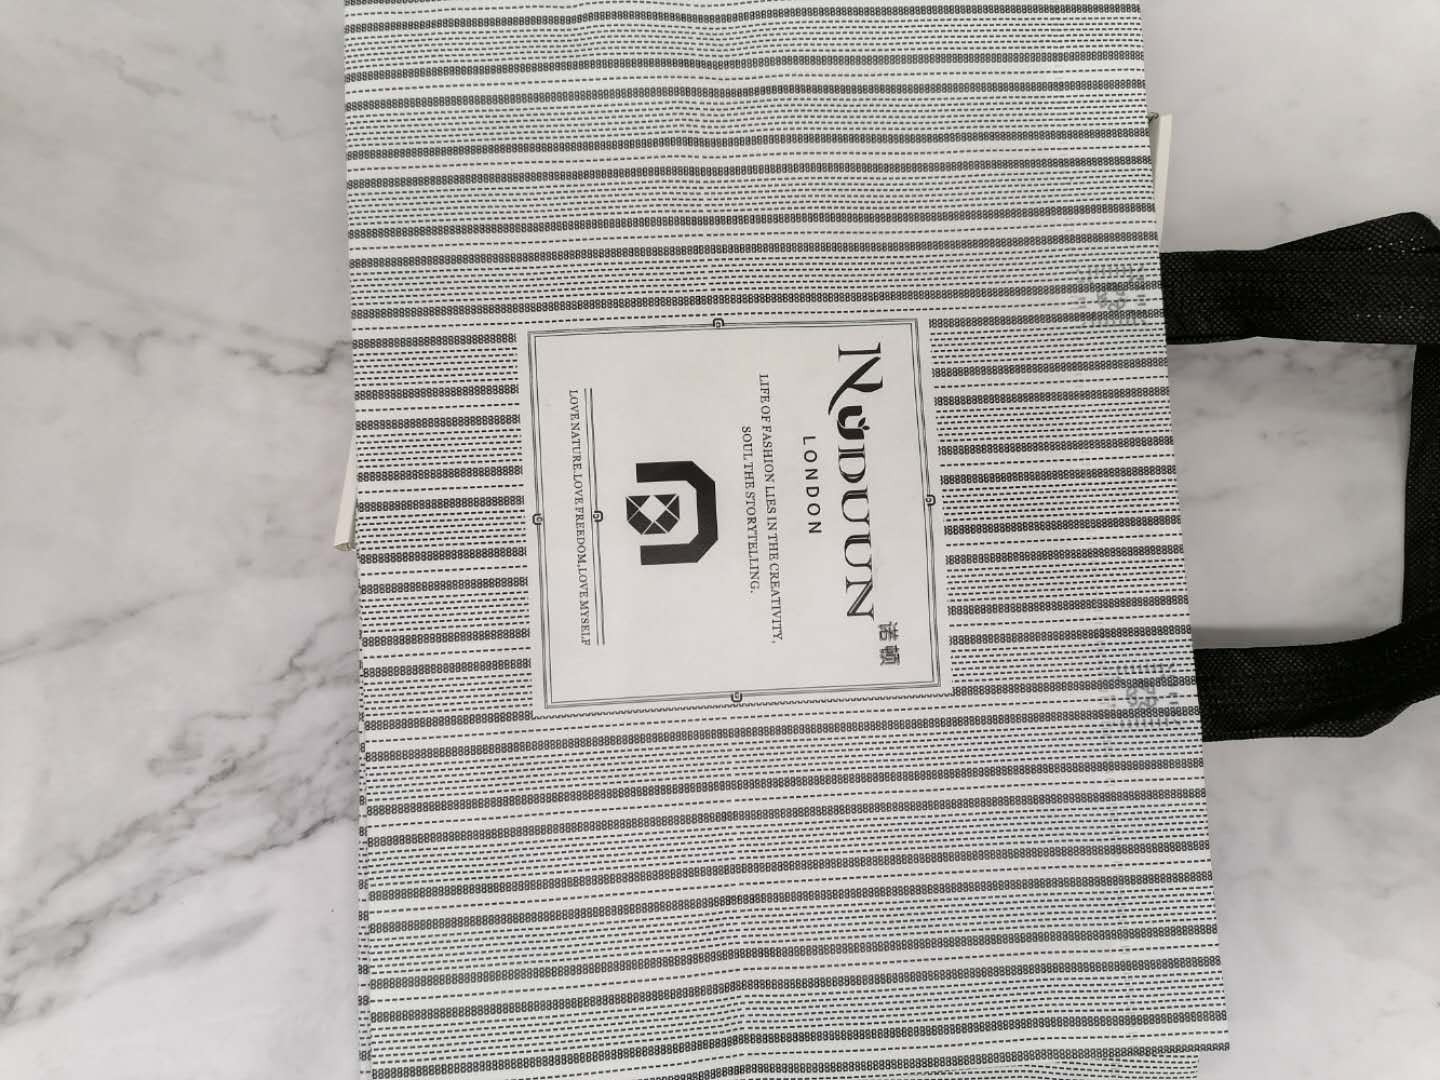 Hotel Guest amenity custom logo shopping bag